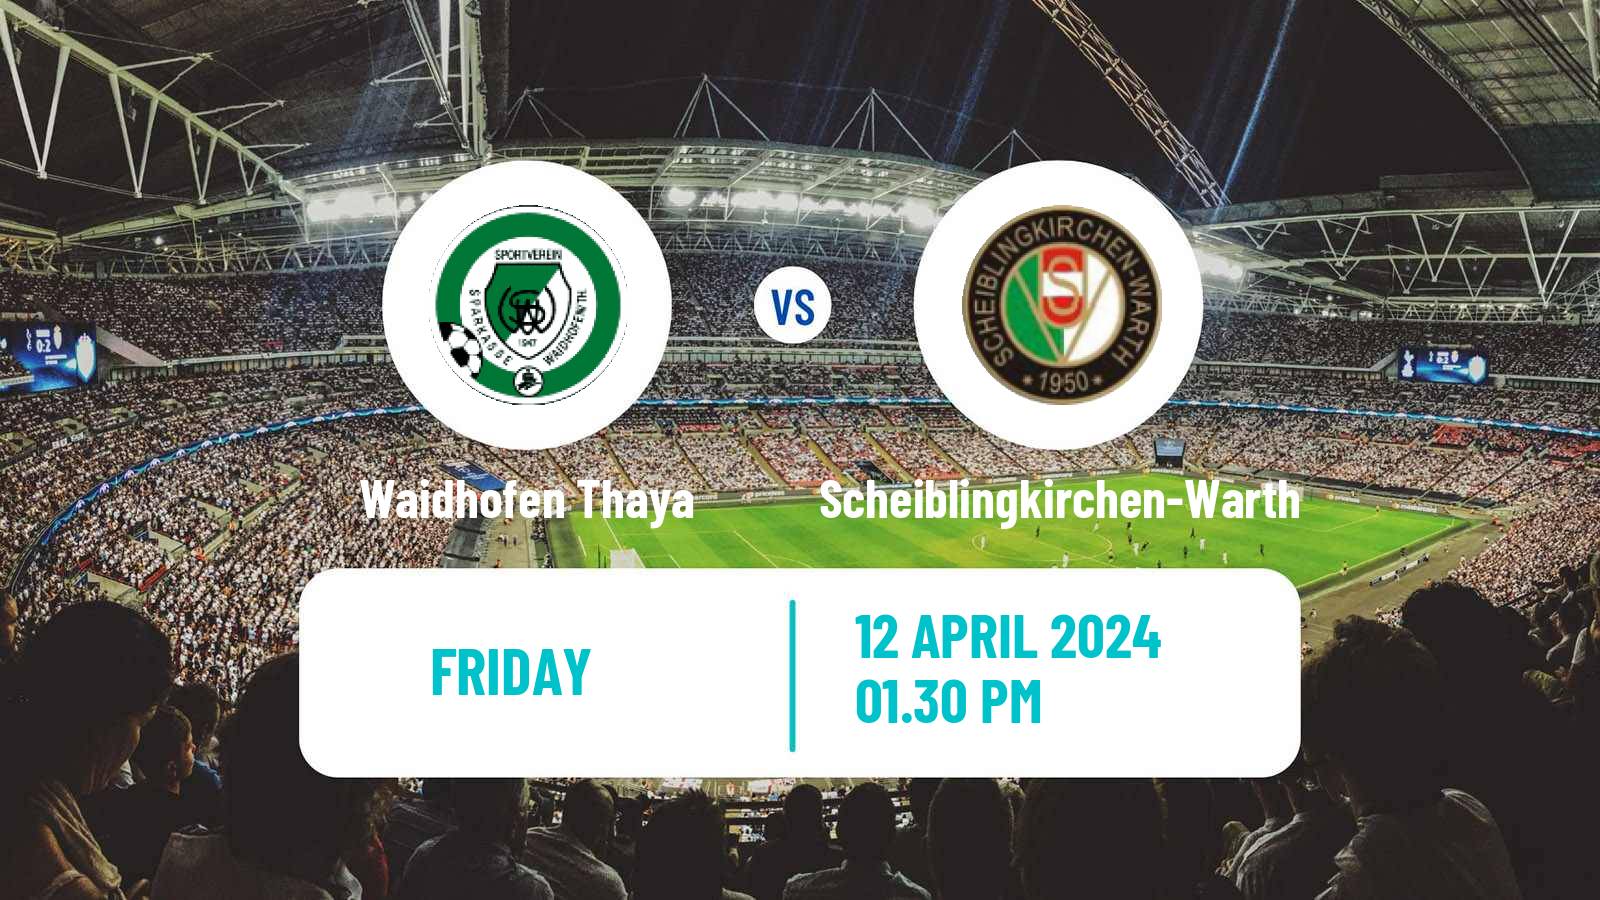 Soccer Austrian Landesliga Niederosterreich Waidhofen Thaya - Scheiblingkirchen-Warth